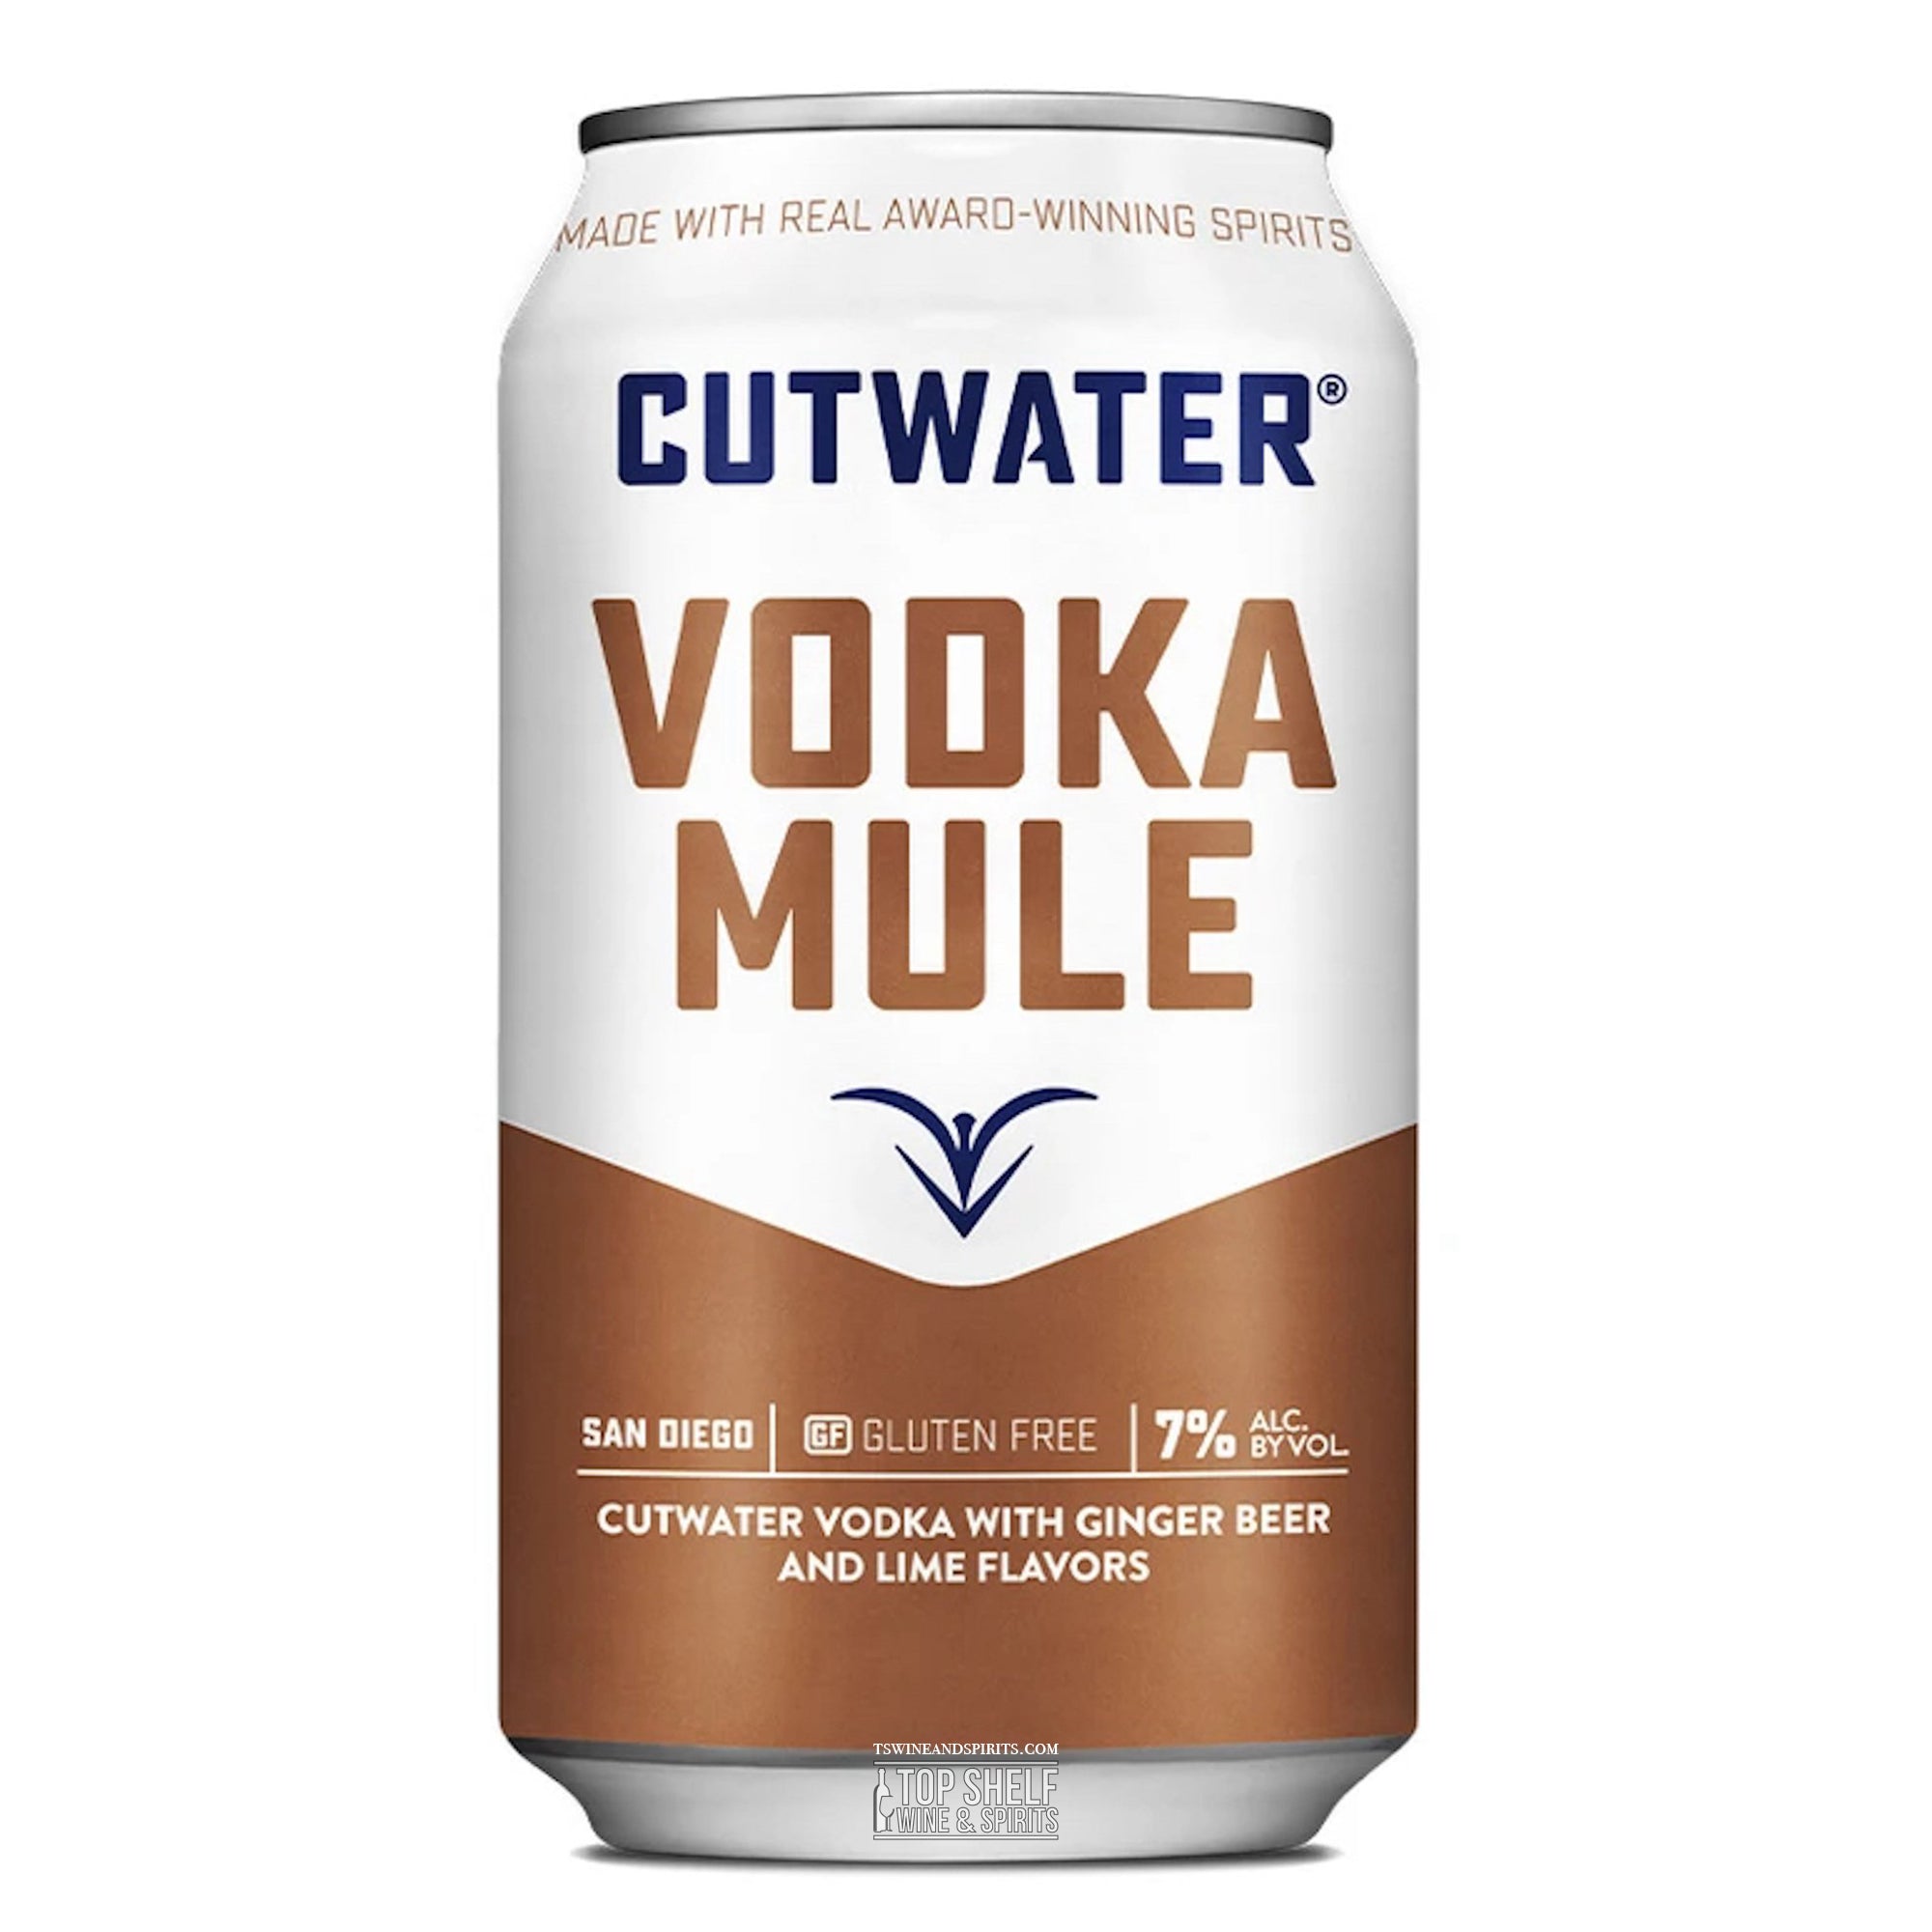 Cutwater Vodka Mule 4 pack